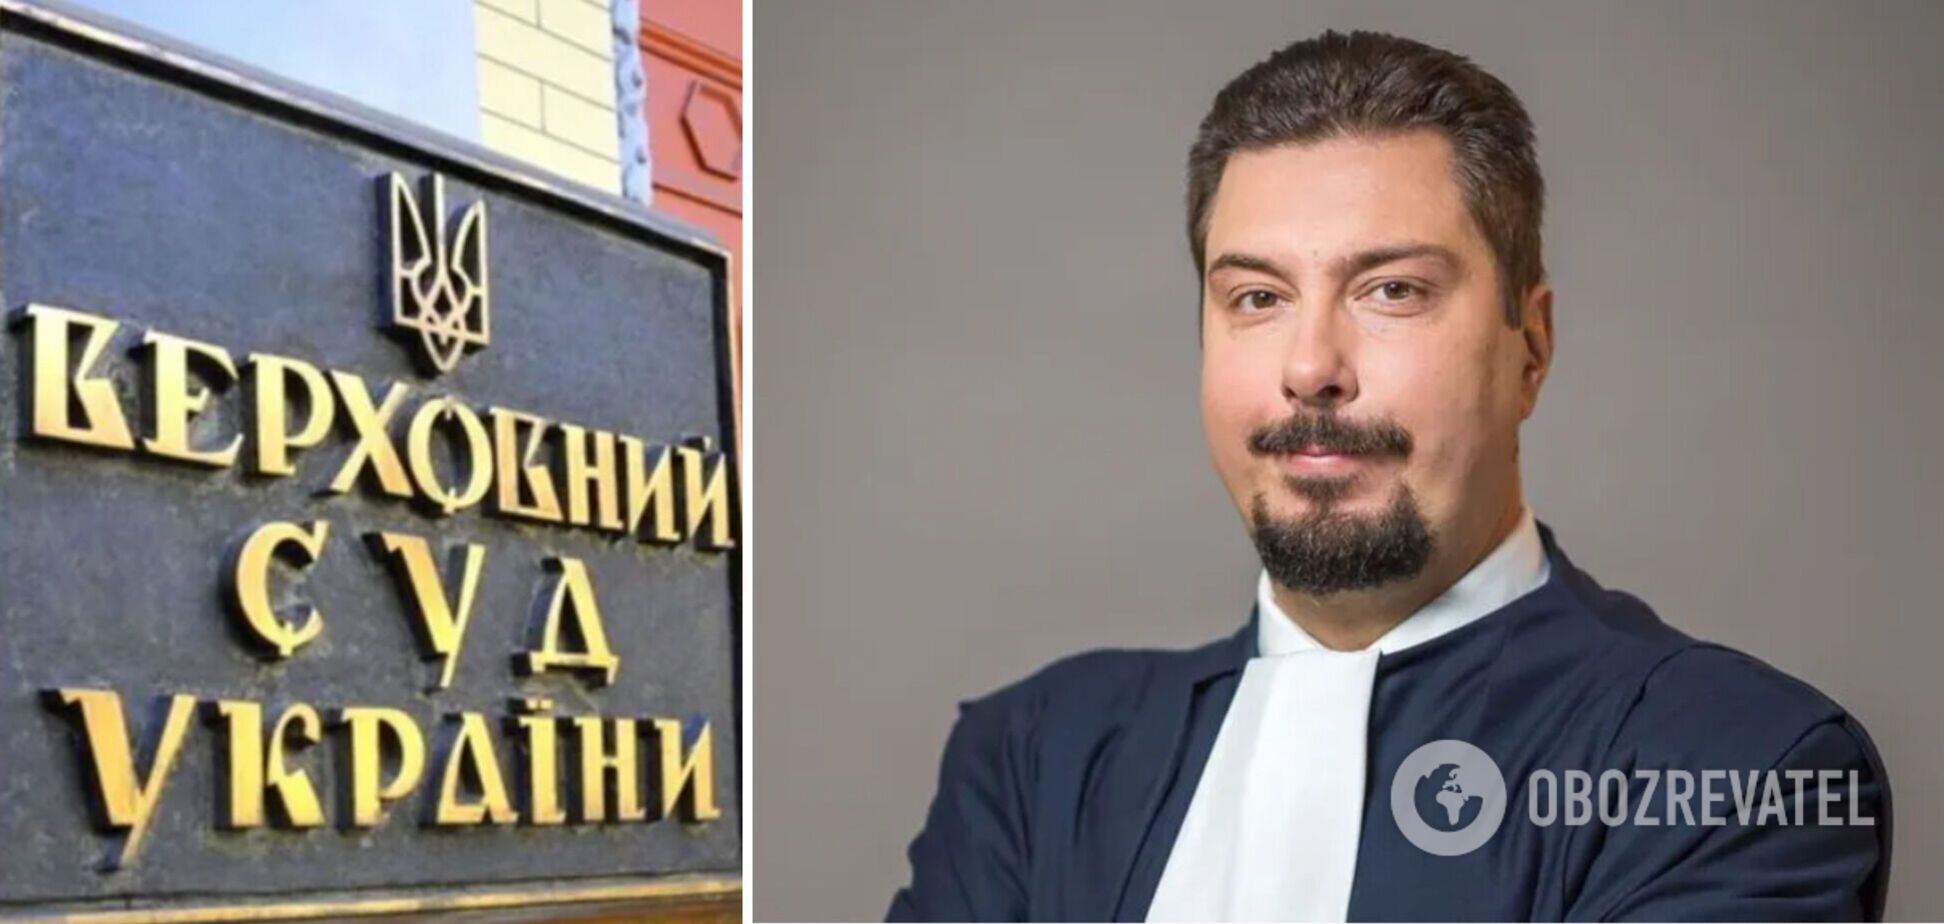 Задержание Князева не ставит крест на судебной системе Украины: это большой шаг к очищению